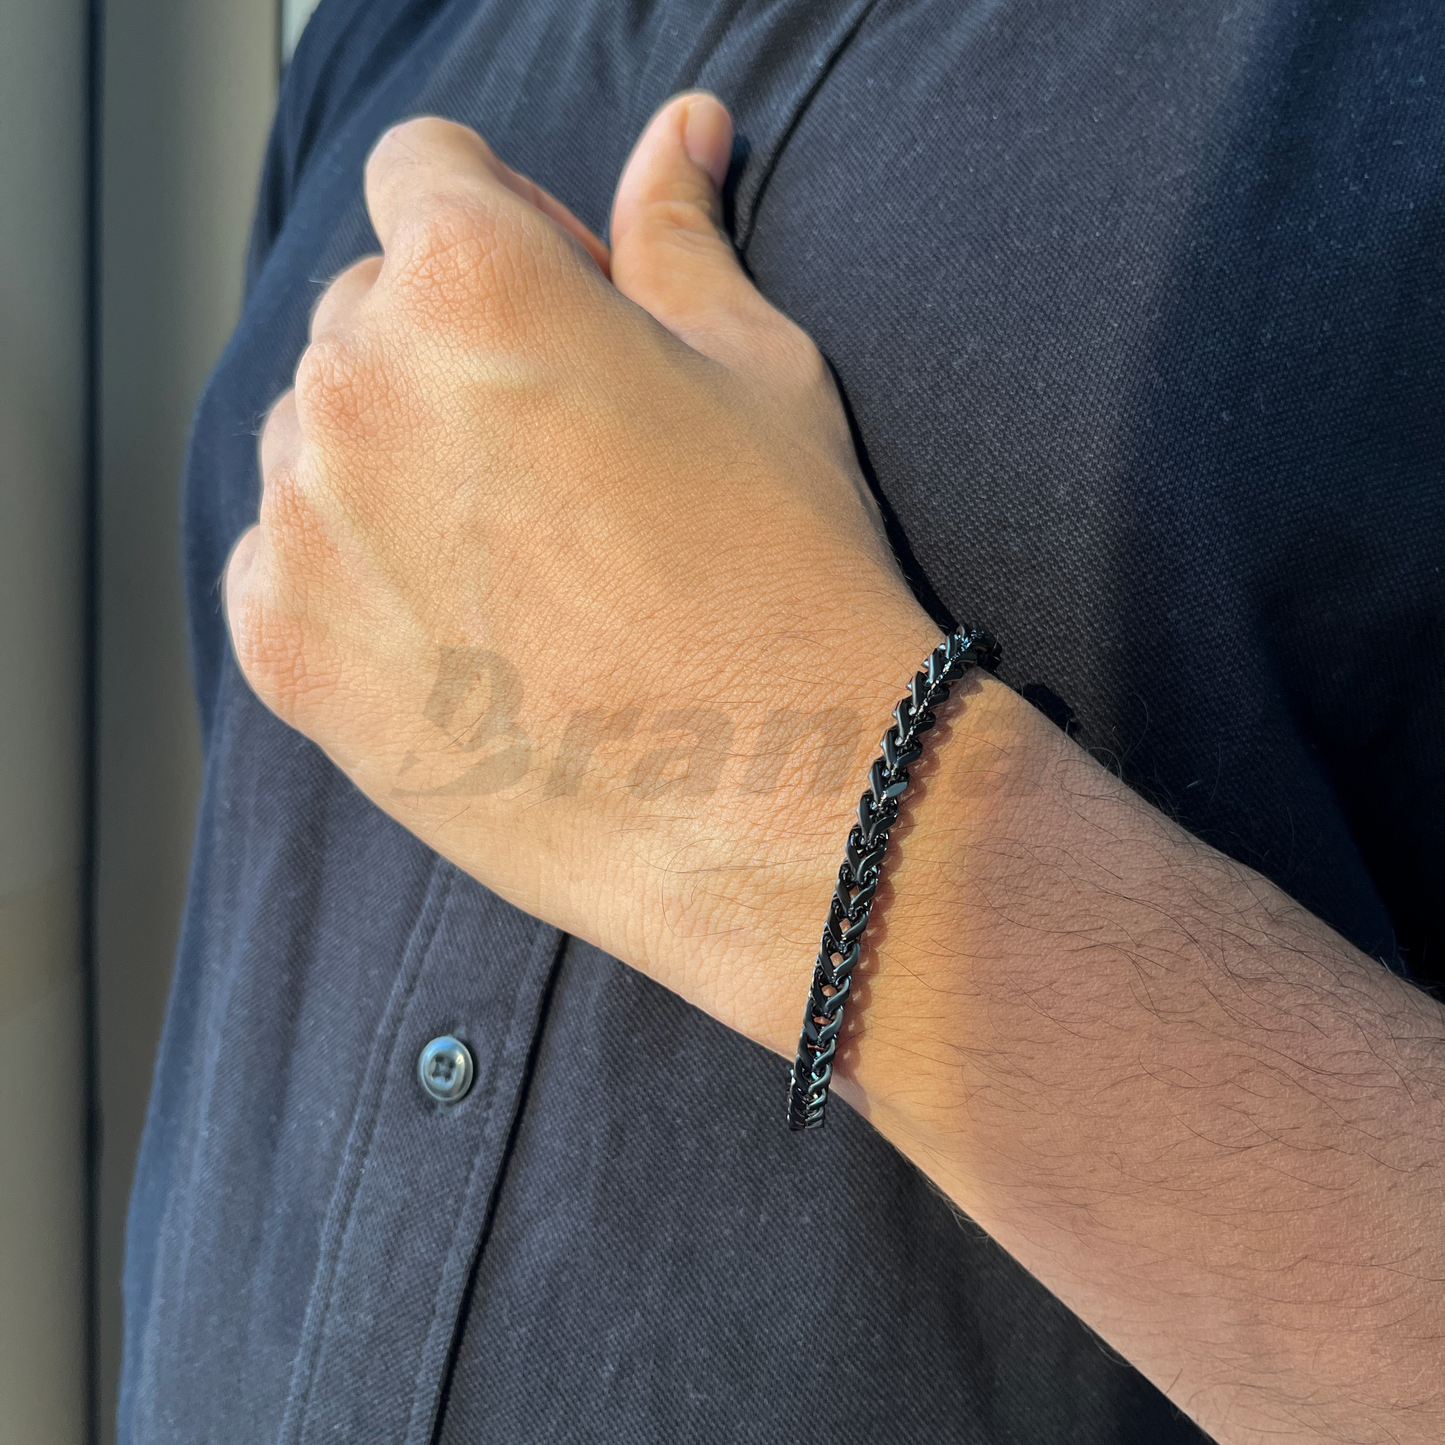 Trendy & Stylish Black Stainless Steel Bracelet For Men (8.5 Inch)